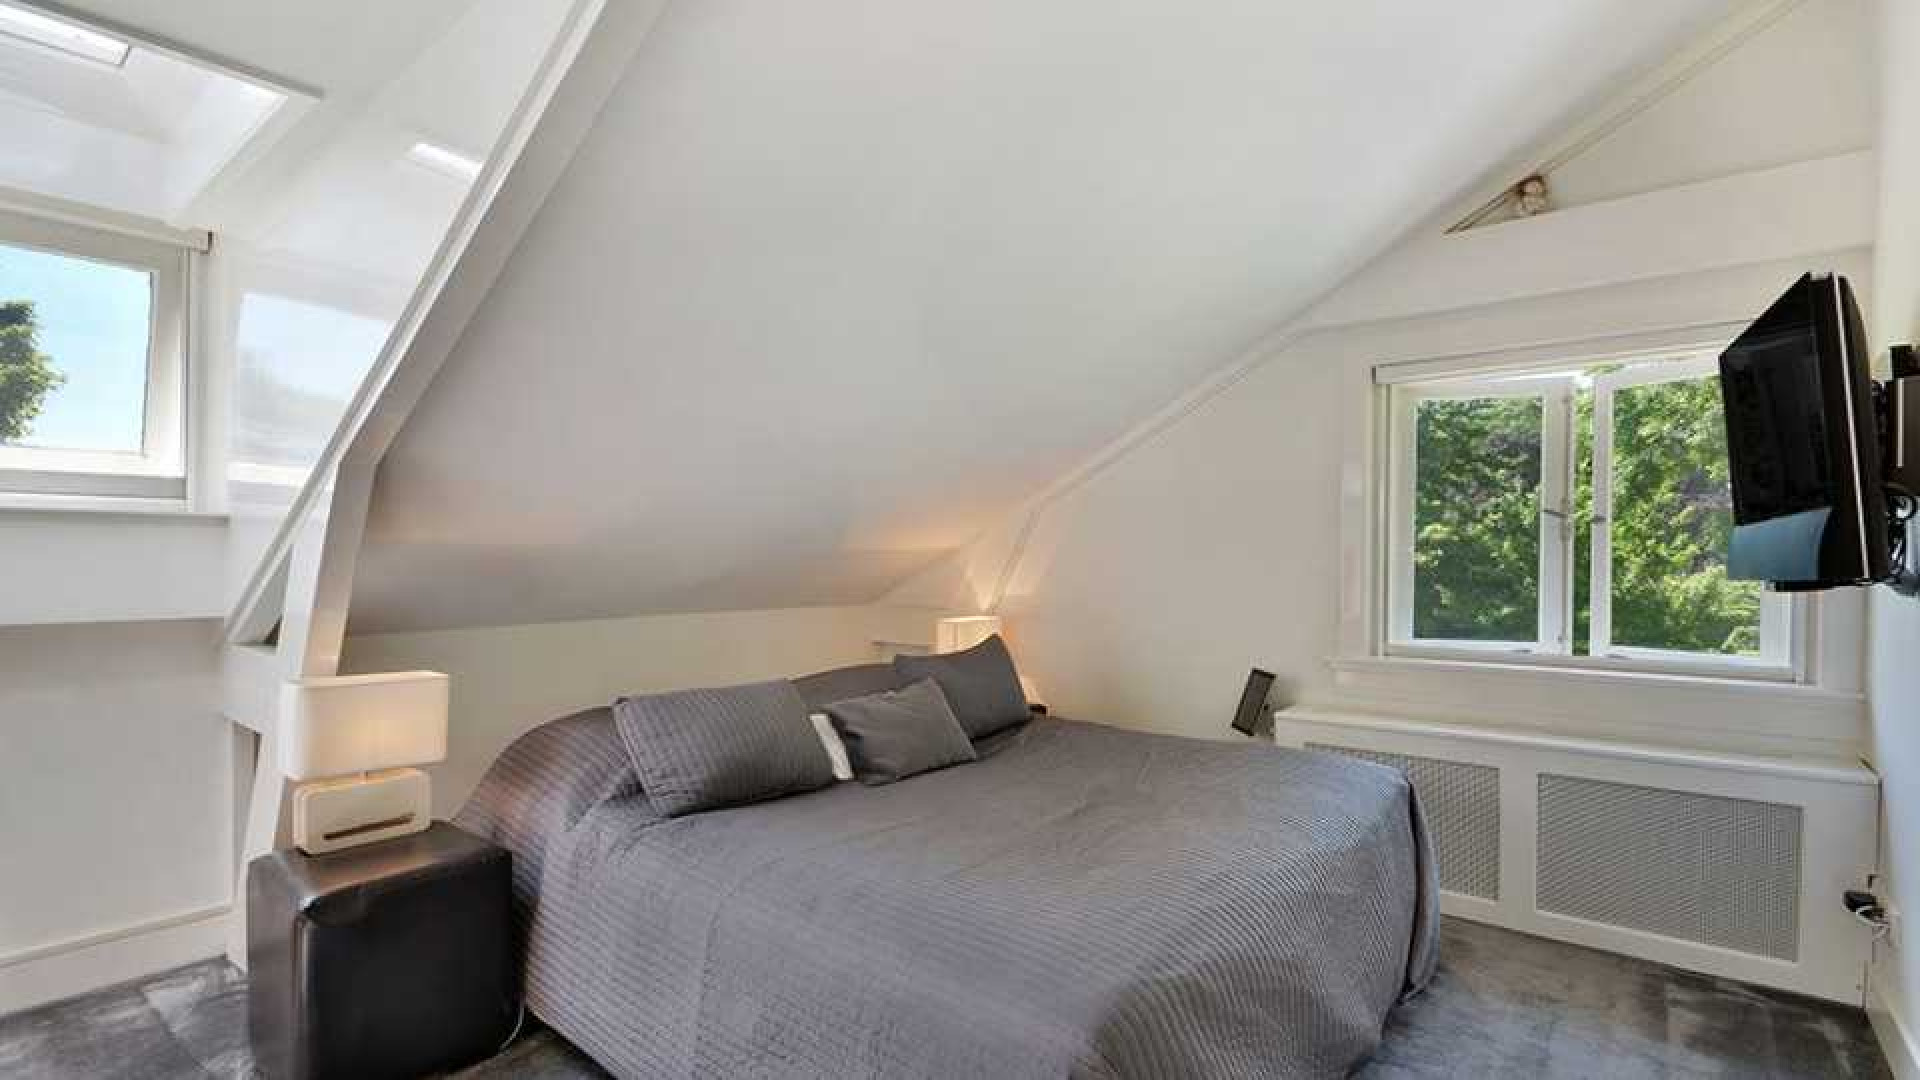 Thijs Romer koopt appartement naast Wendy van Dijk en Erland Galjaard. Zie foto's